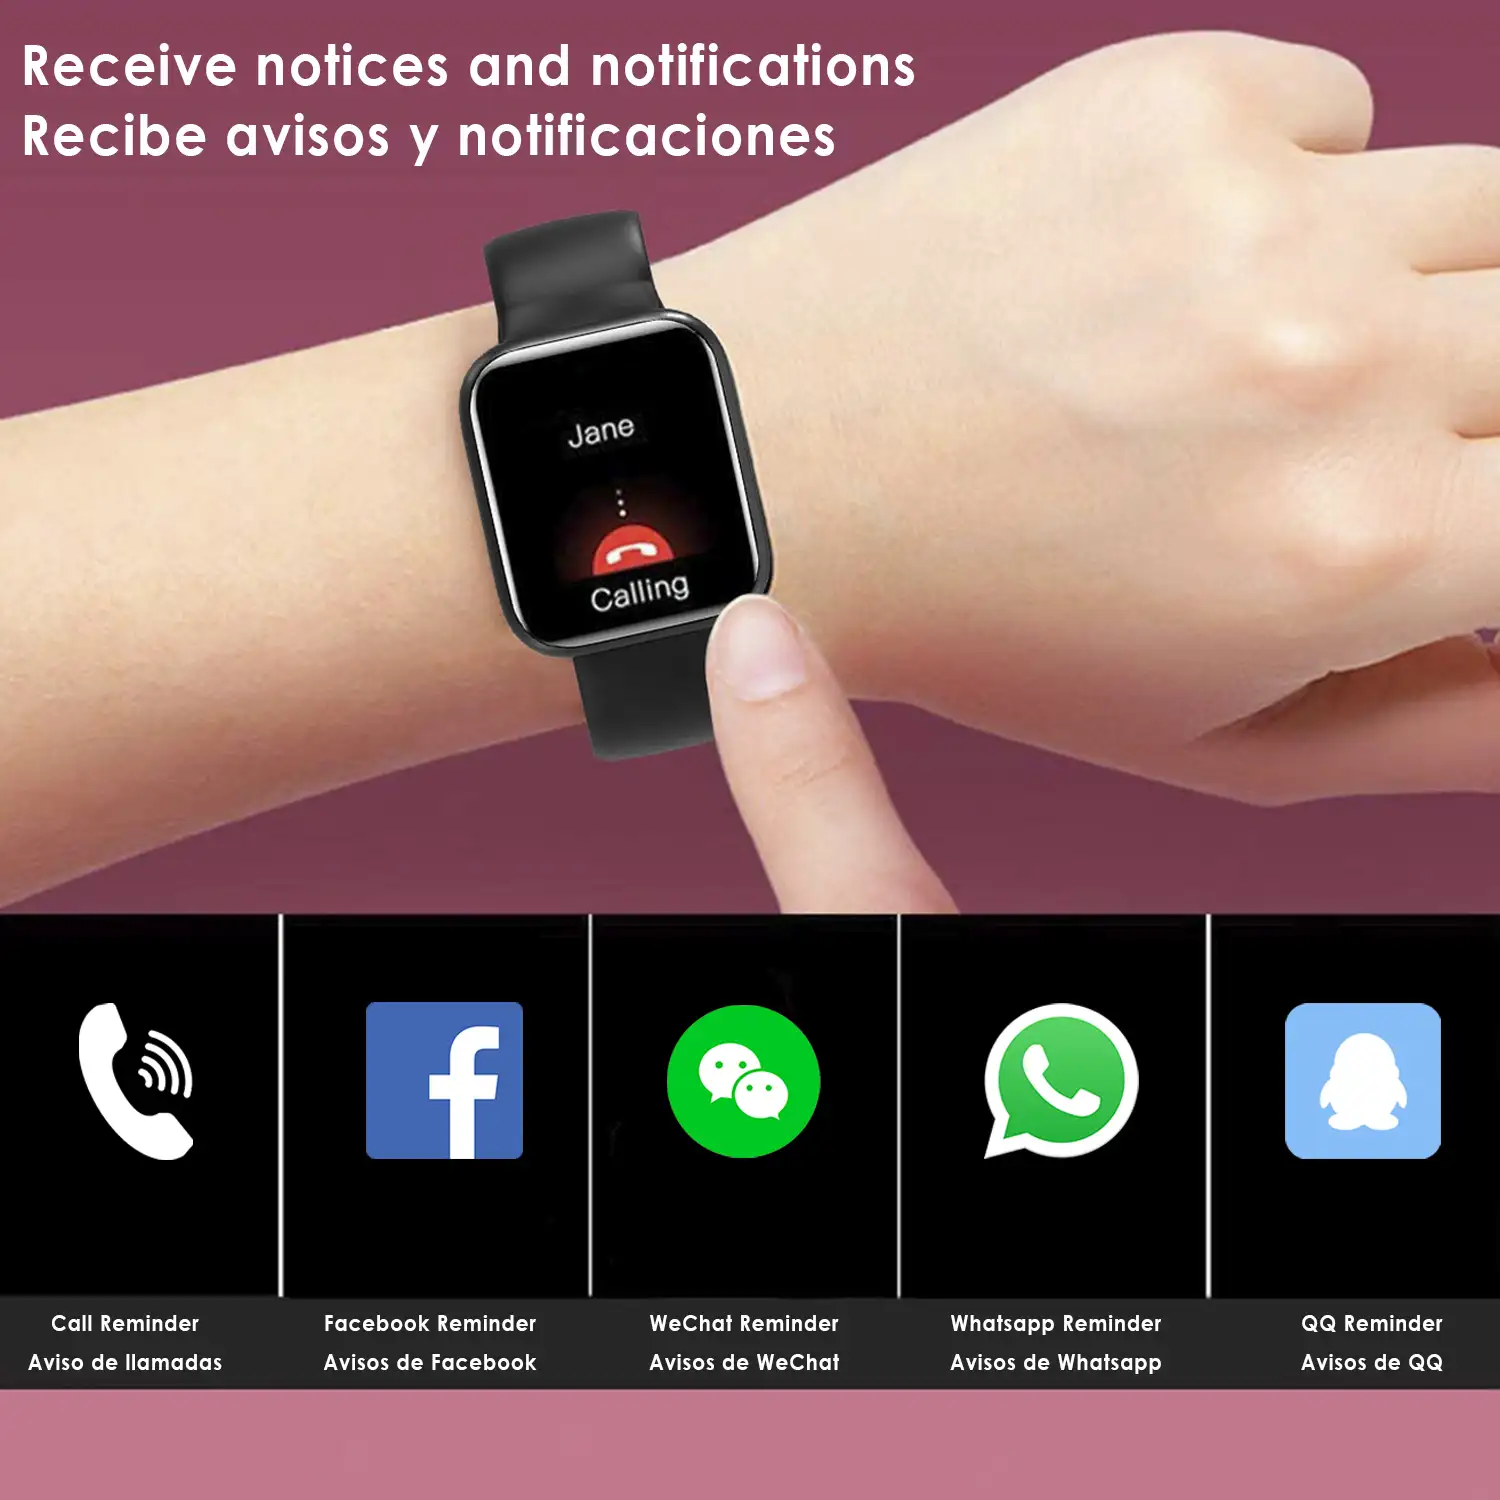 Smartwatch I5 con 5 modos deportivos, oxígeno en sangre, pulso, notificaciones iOS y Android.